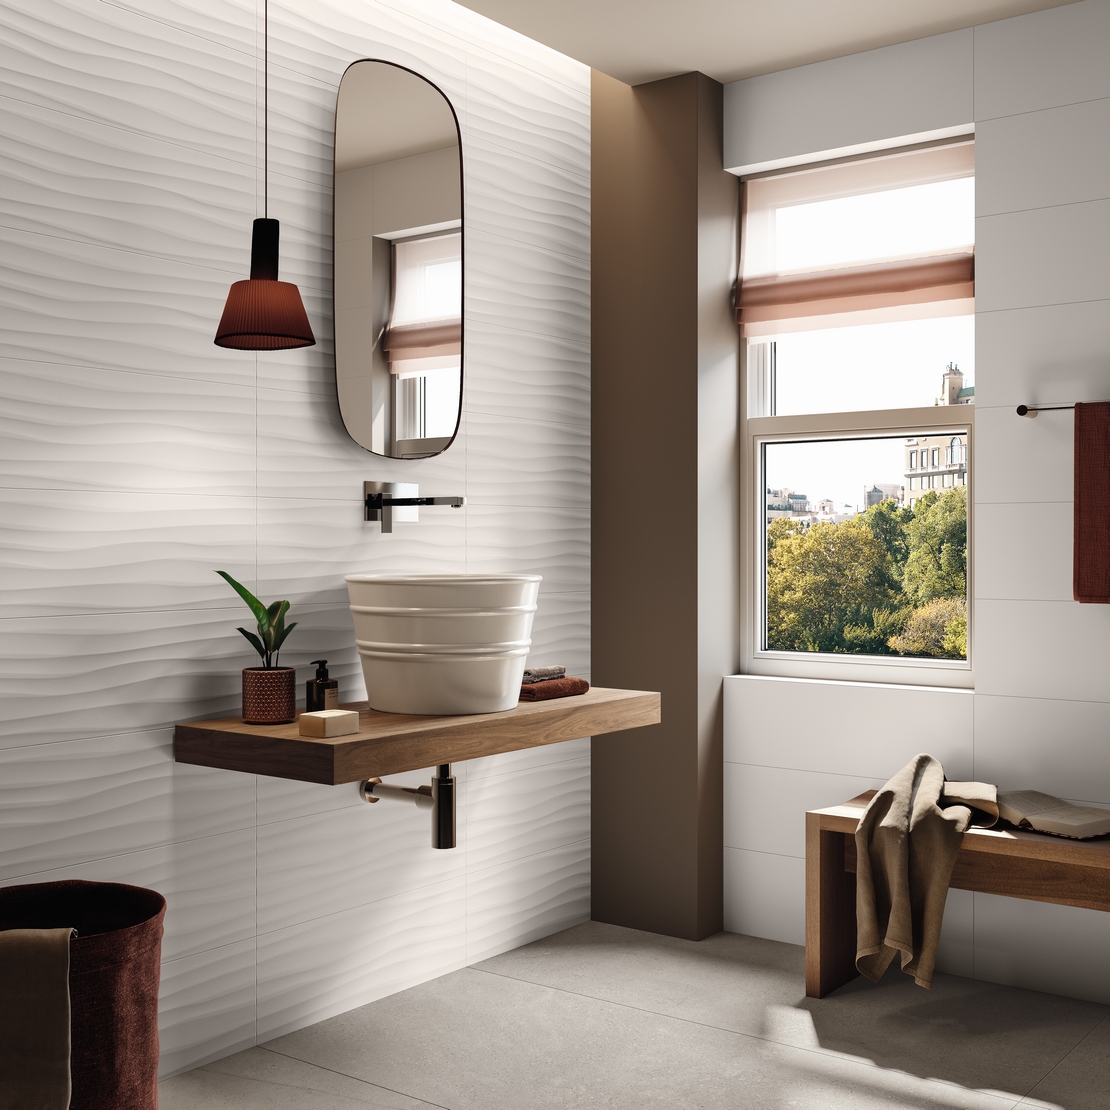 Salle de bains moderne minimaliste de luxe. Grès cérame gris, carrelage motif vague 3D blanc-gris. - Inspirations Iperceramica